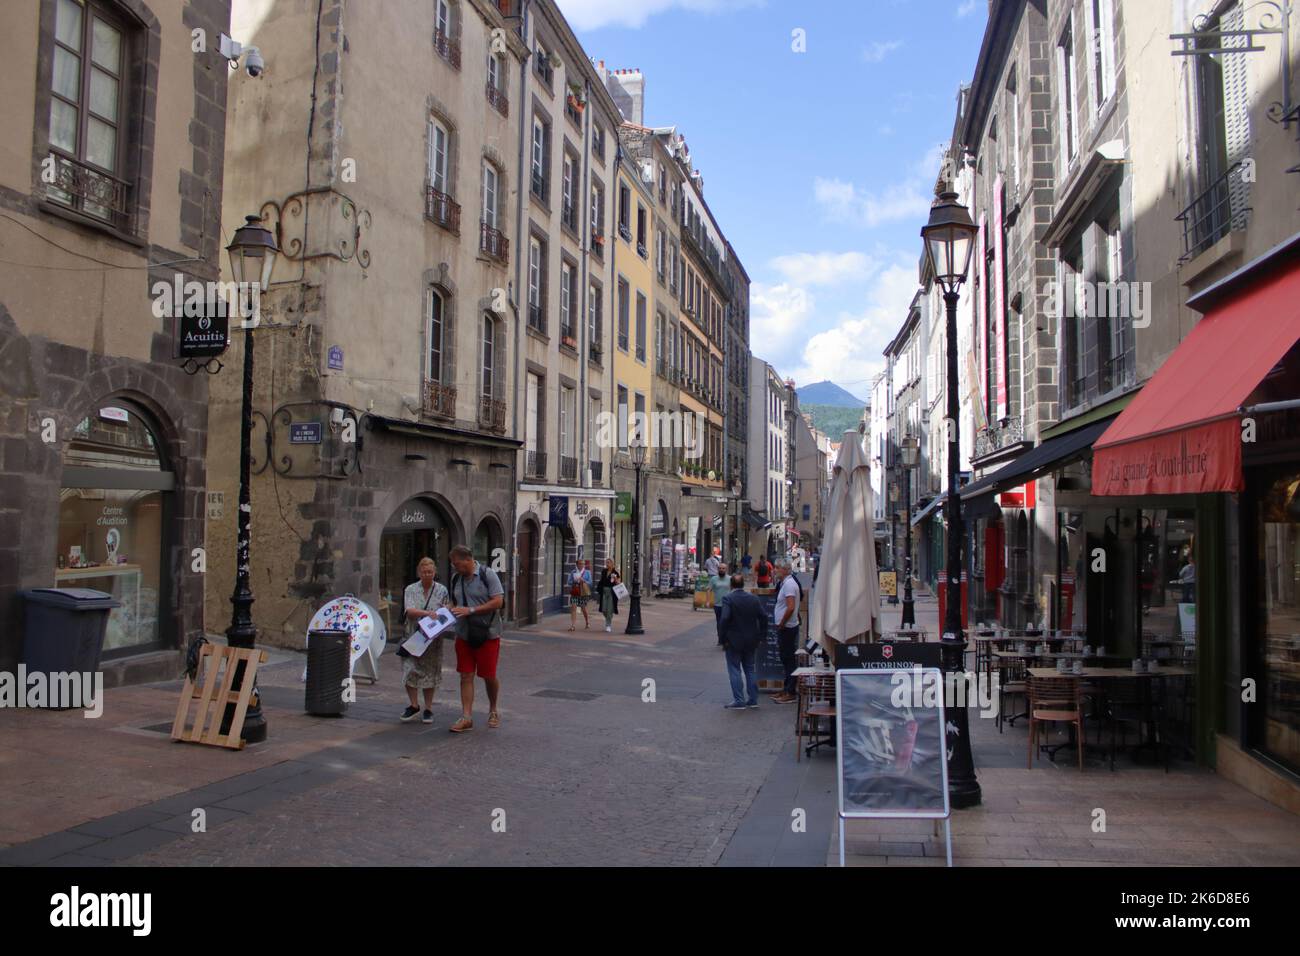 Vue sur la célèbre rue des gras située dans le centre de Clermont-Ferrand, une ville du centre de la France. Banque D'Images